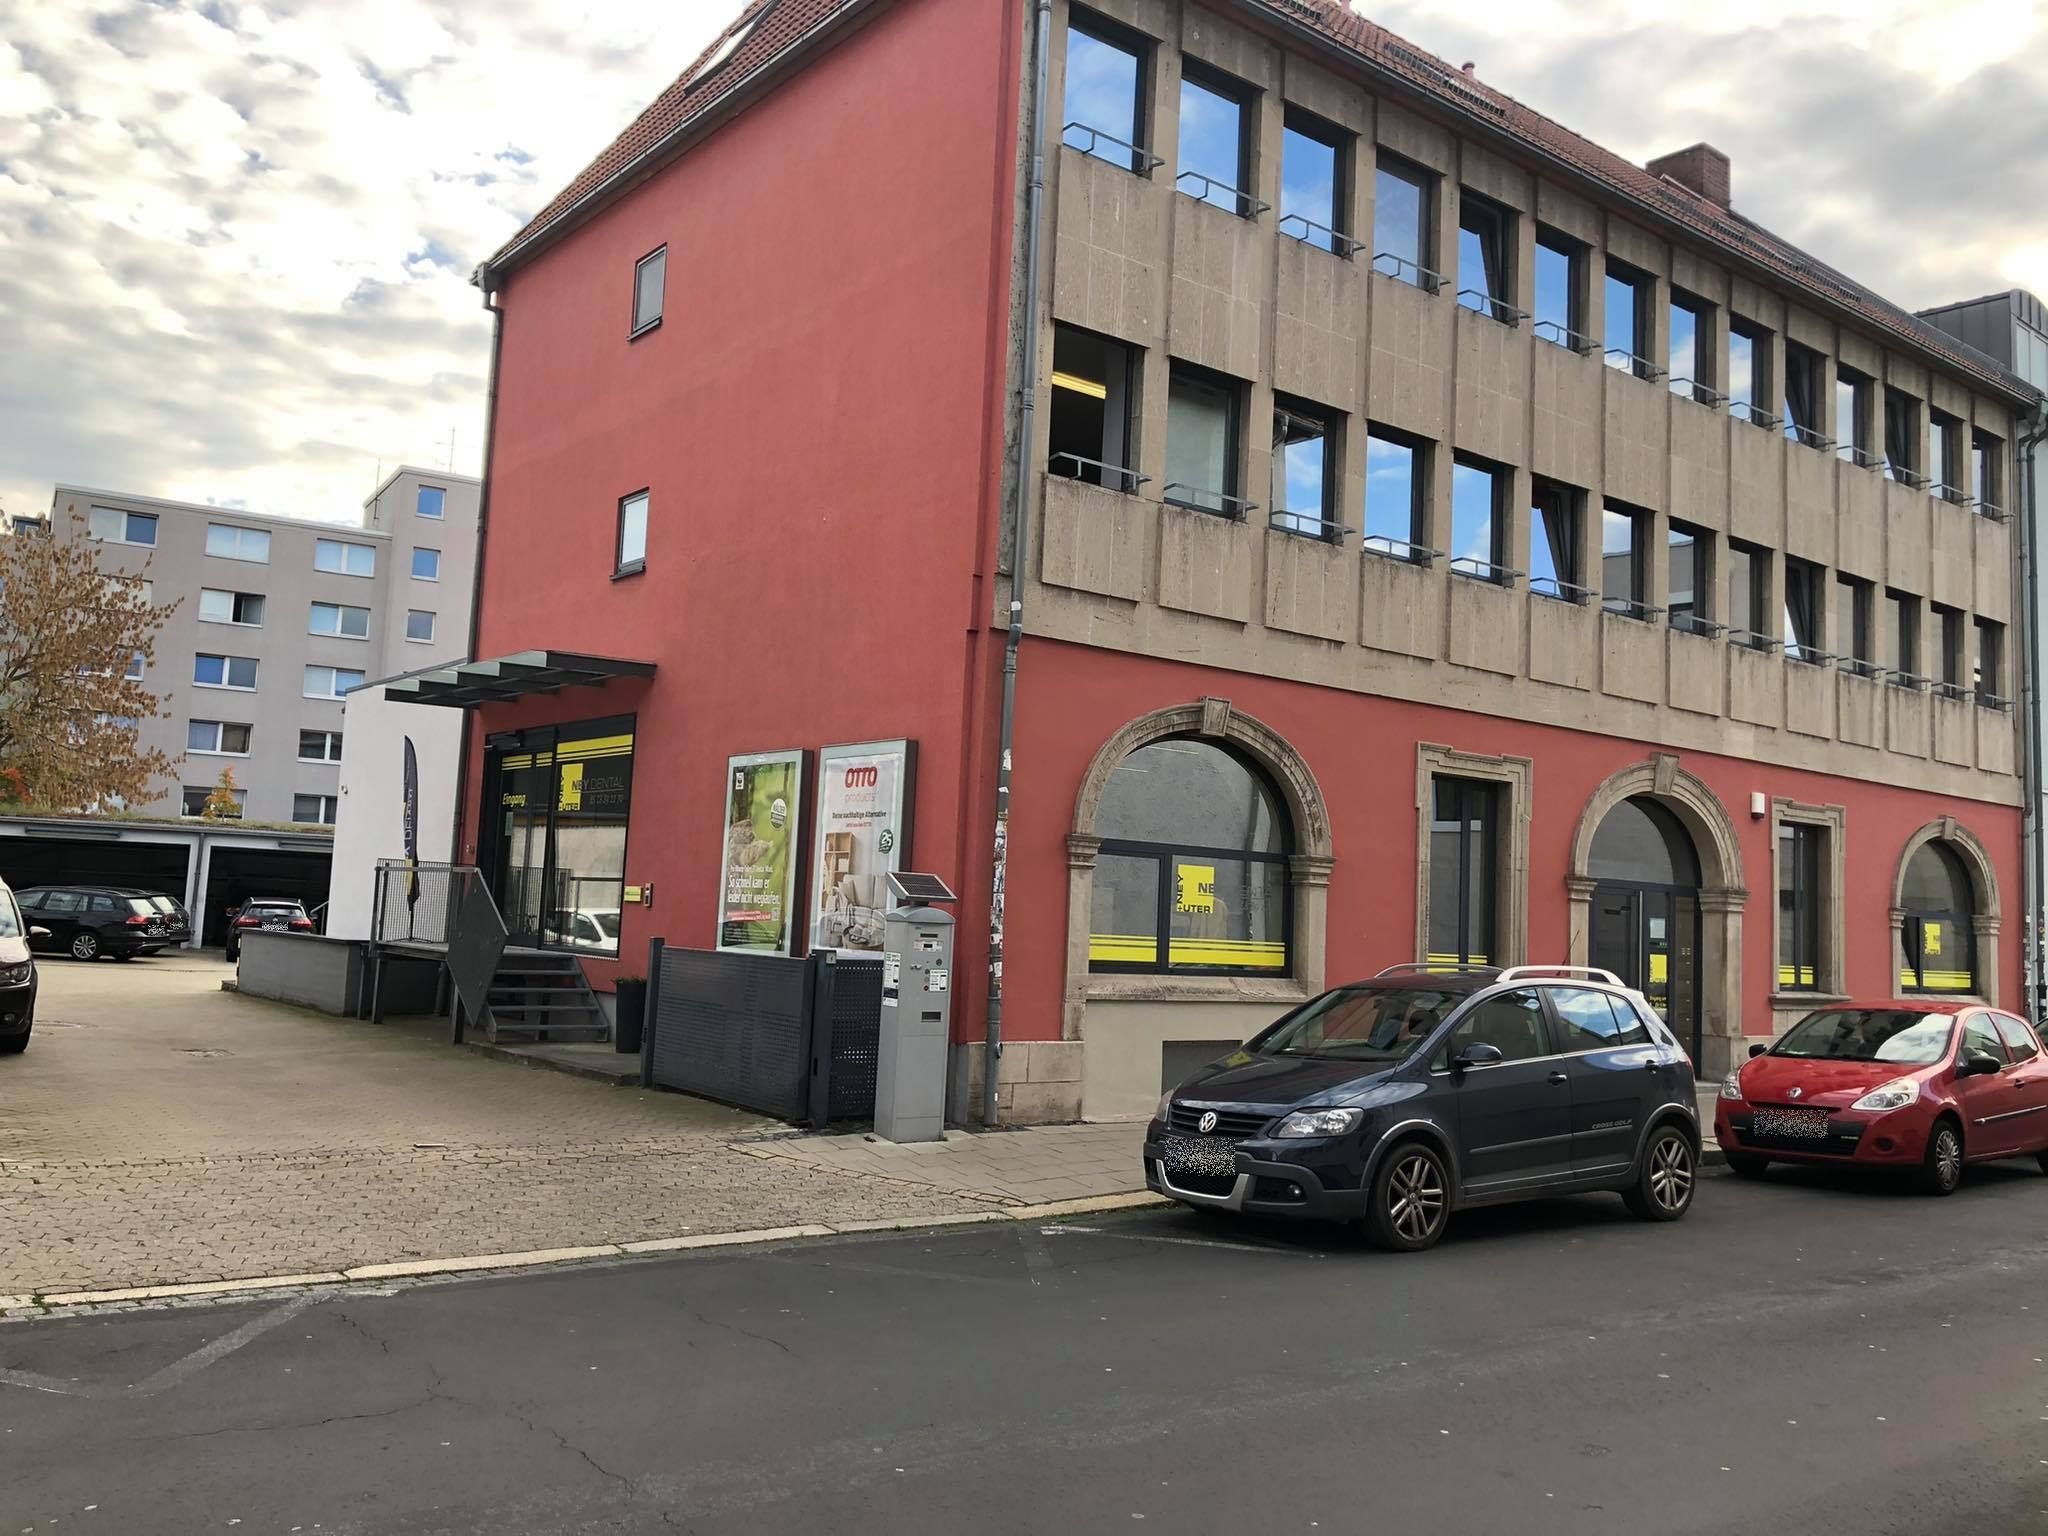 Ströer Deutsche Städte Medien GmbH, Breite Straße 21-22 in Braunschweig